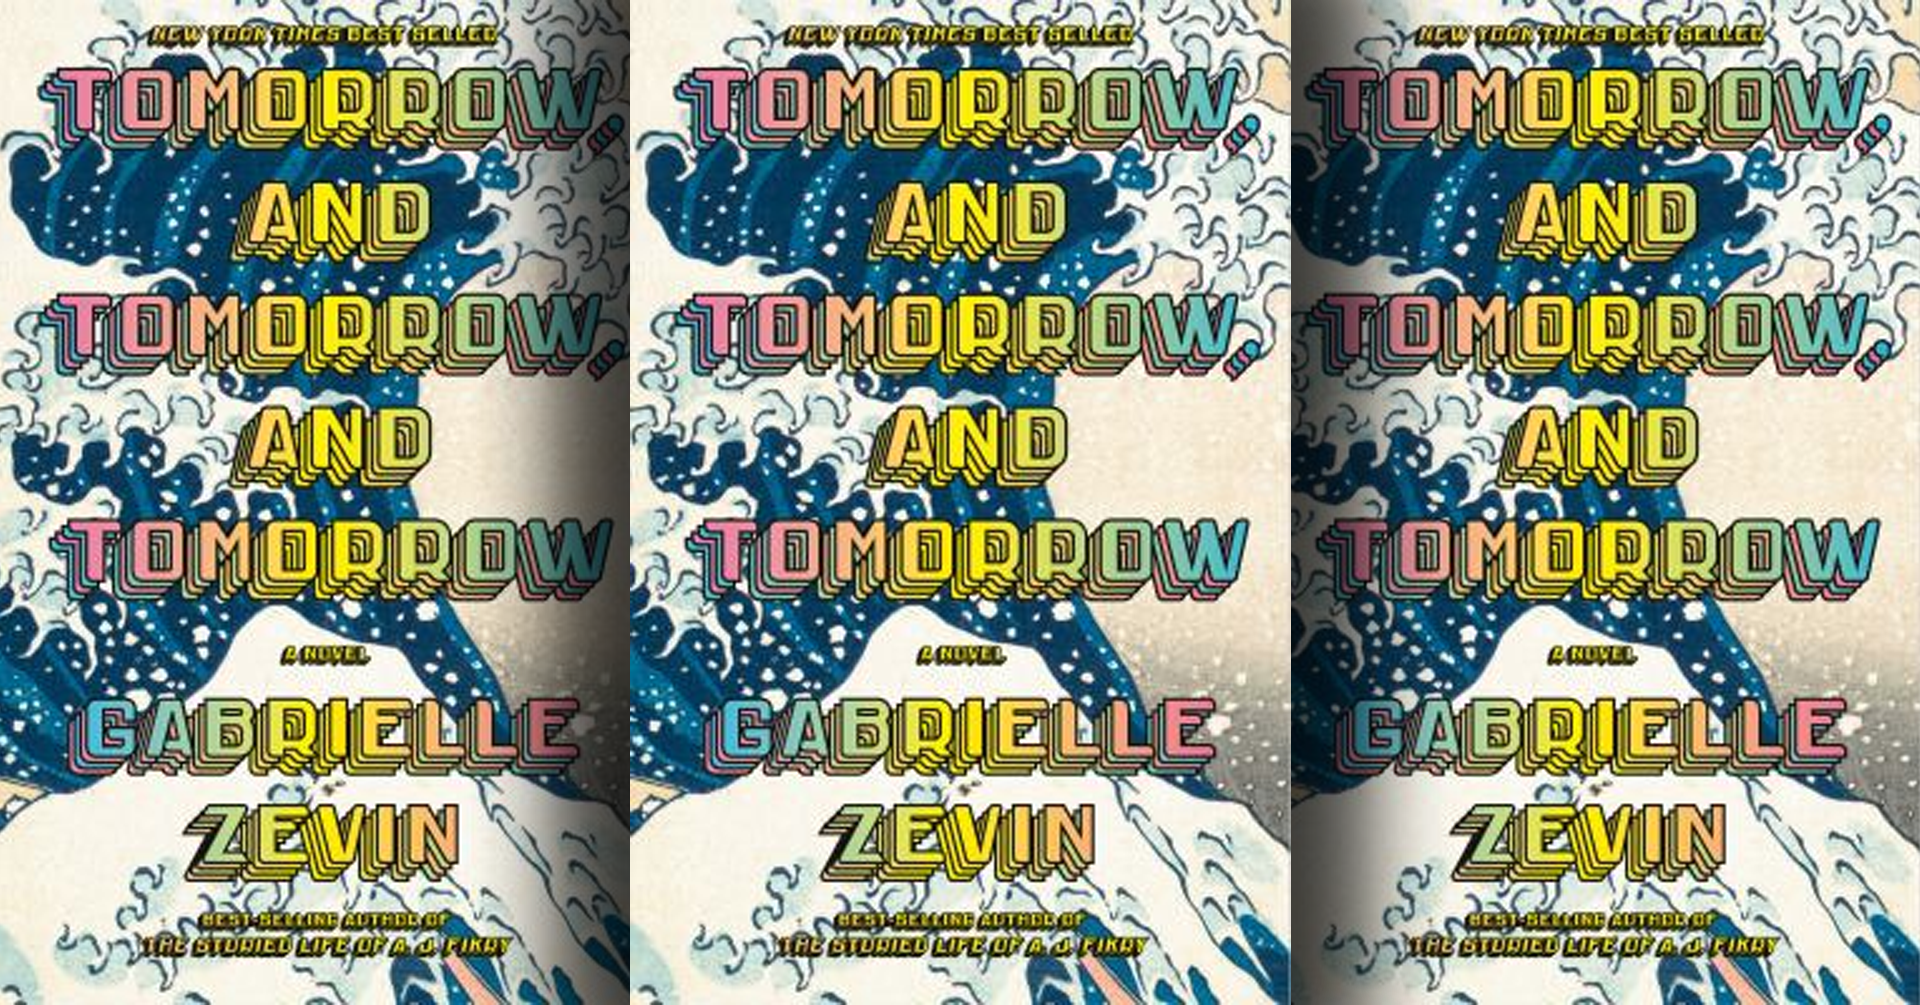 Tomorrow and Tomorrow, and Tomorrow by Gabrielle Zevin